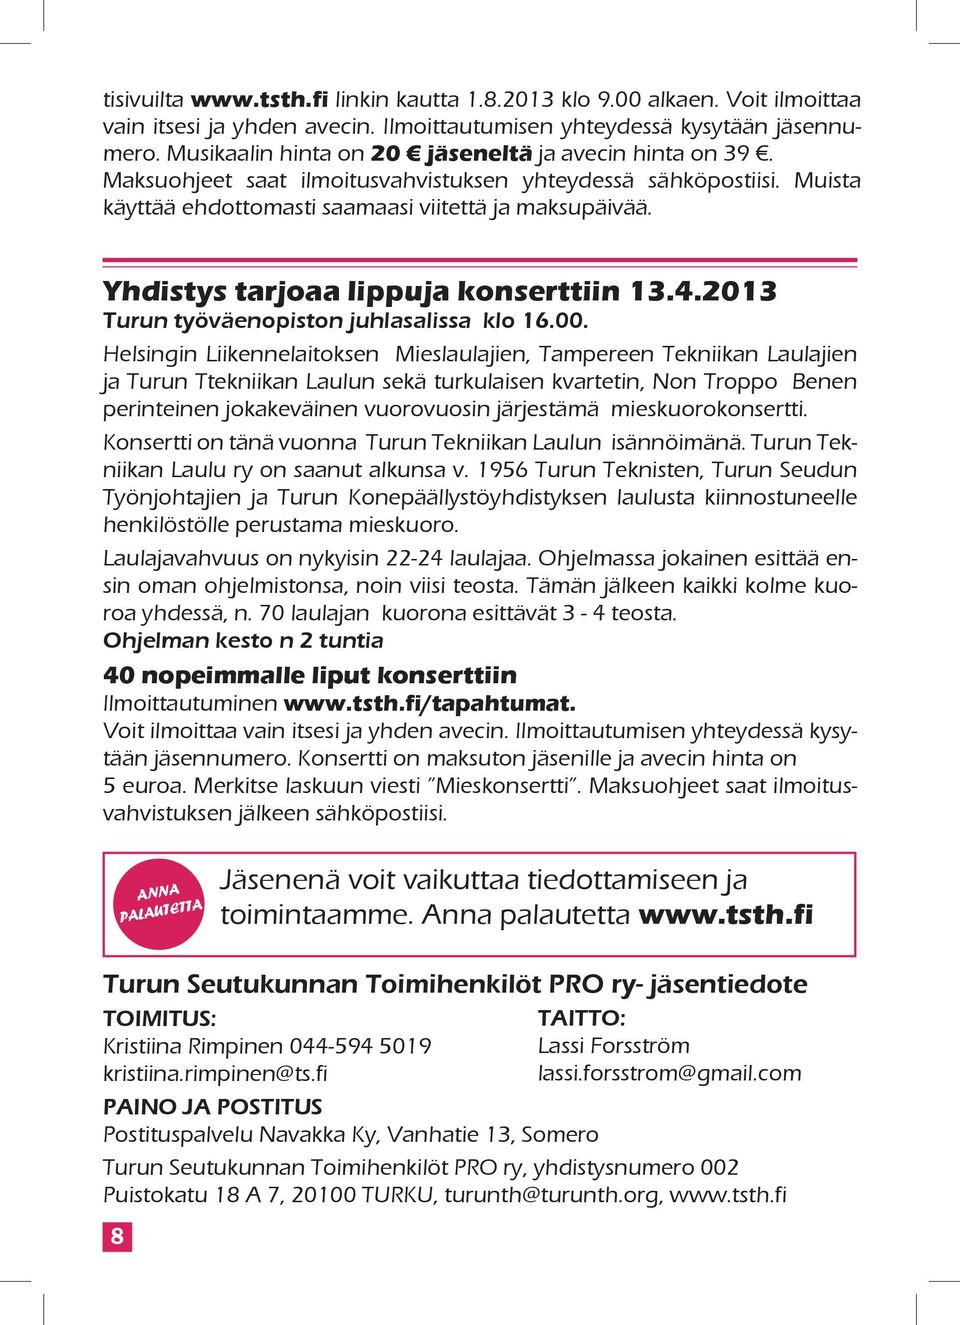 Yhdistys tarjoaa lippuja konserttiin 13.4.2013 Turun työväenopiston juhlasalissa klo 16.00.